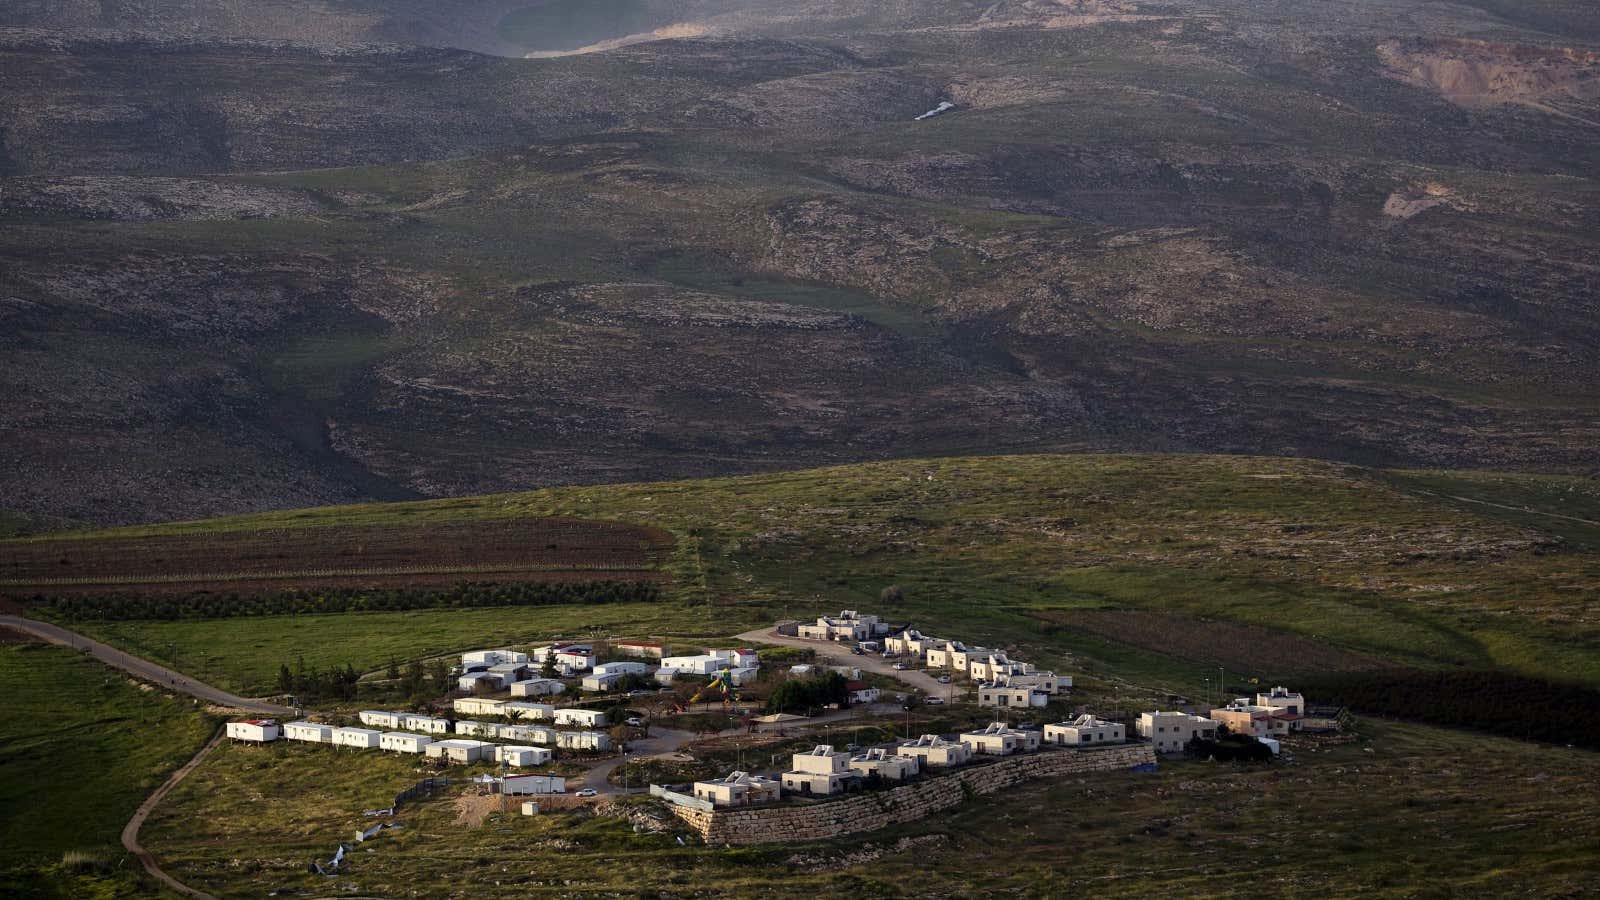 A settlement in the West Bank near Ramallah.